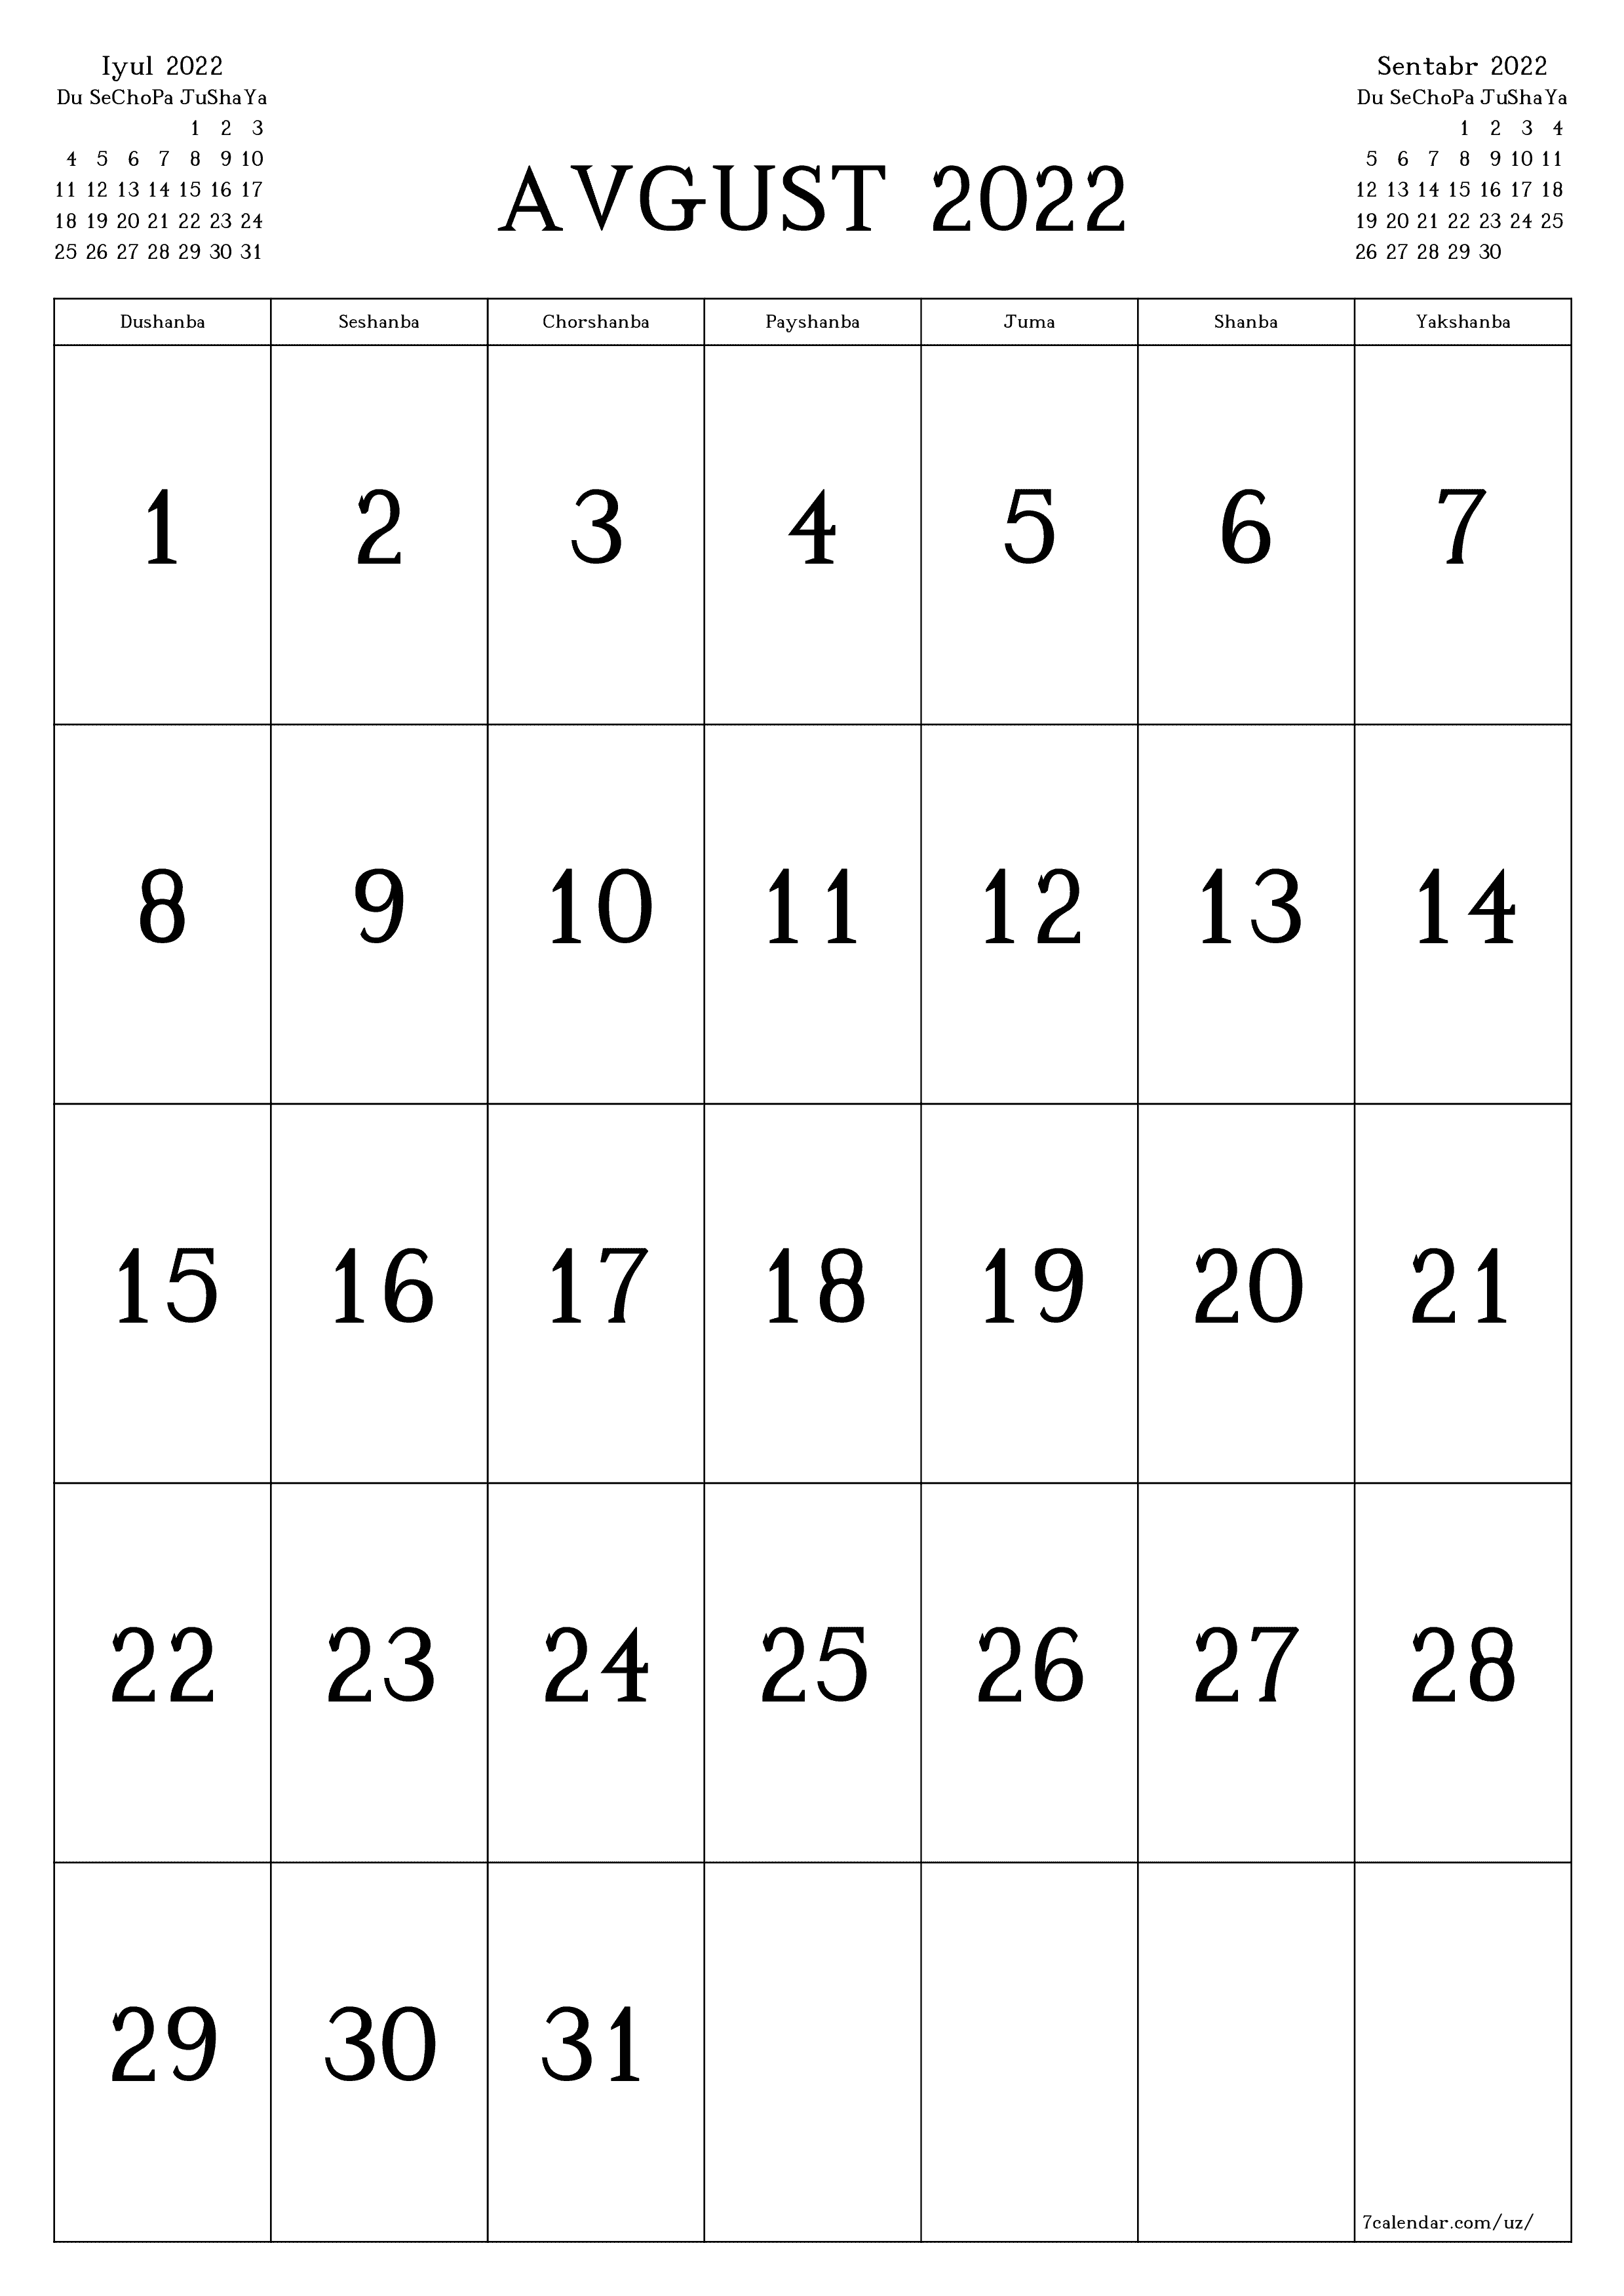 chop etiladigan devor taqvimi shabloni bepul vertikal Oylik kalendar Avgust (Avg) 2022